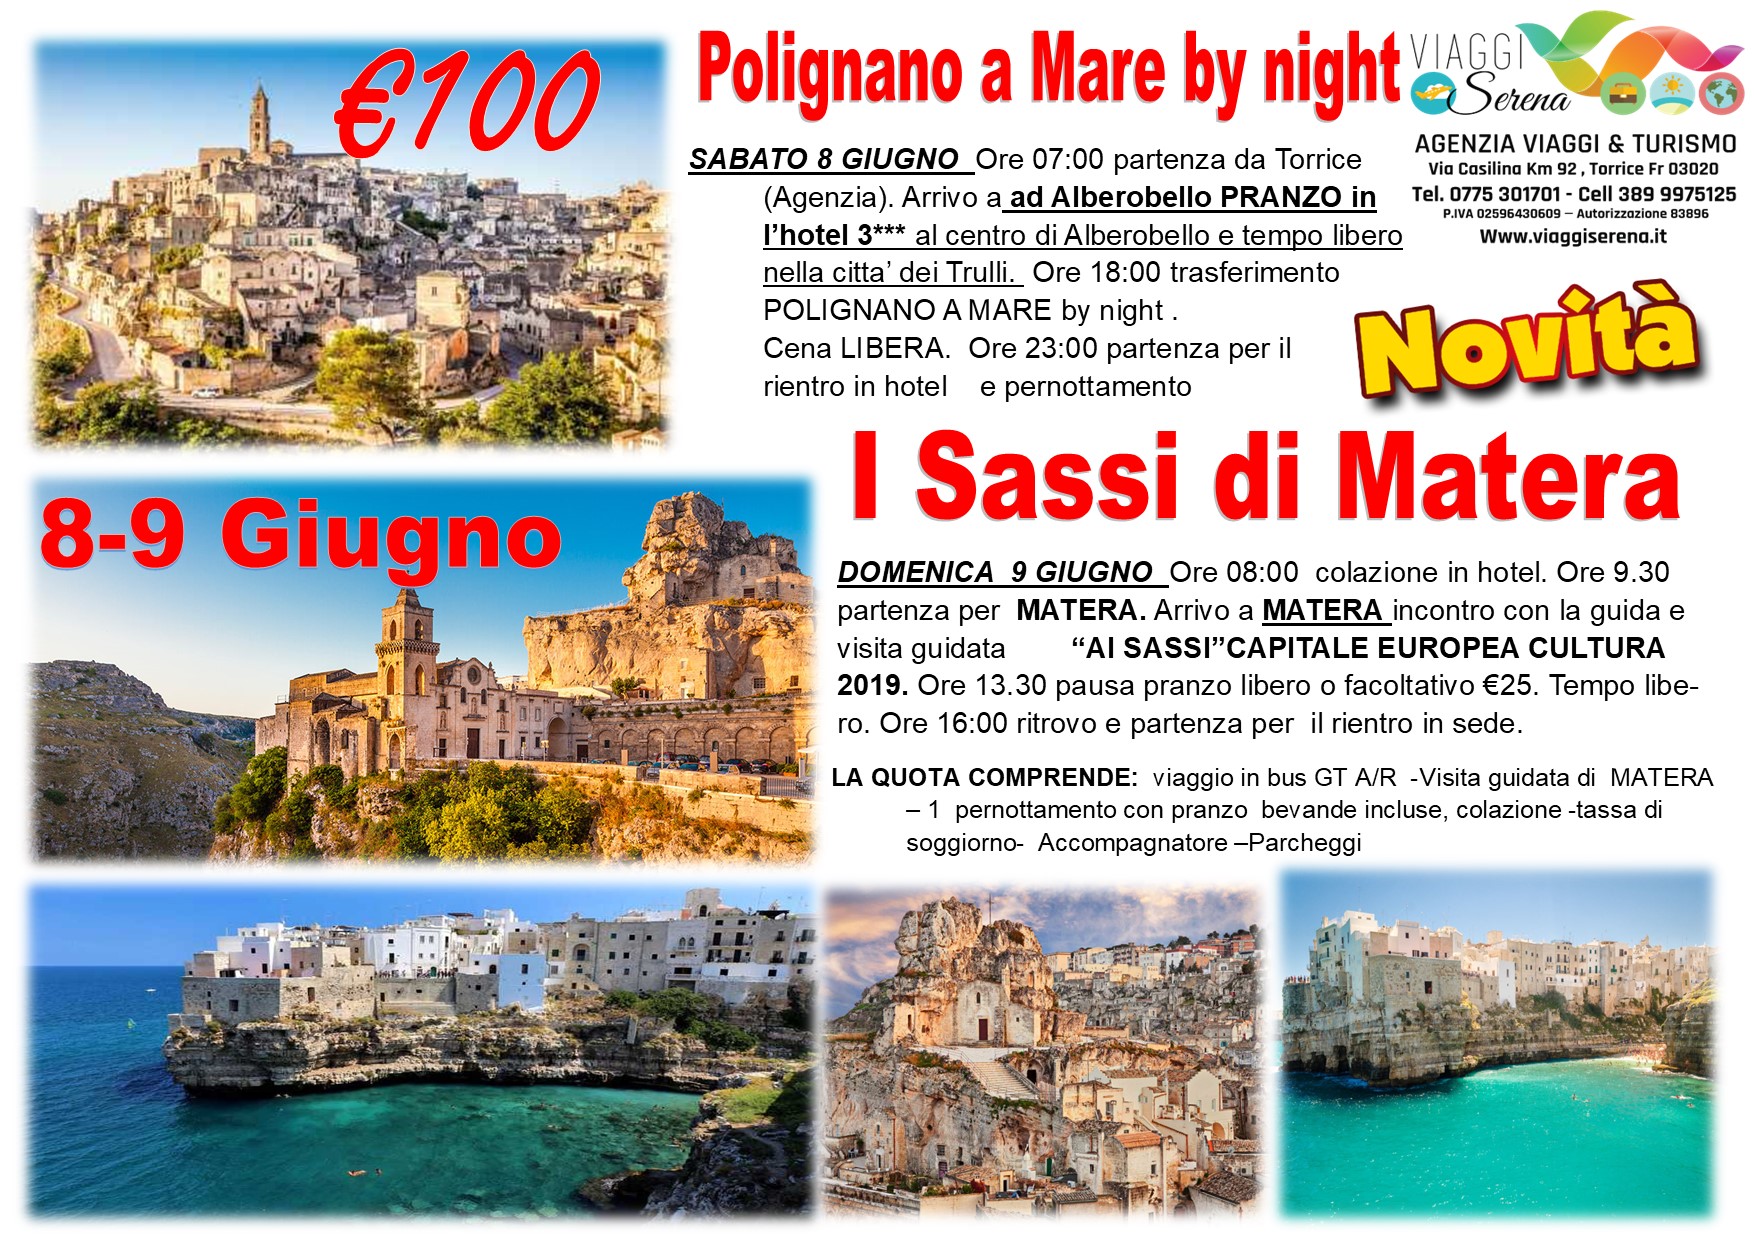 Viaggi di gruppo: Polignano a Mare by night, Matera e Alberobello 8-9 Giugno € 100,00